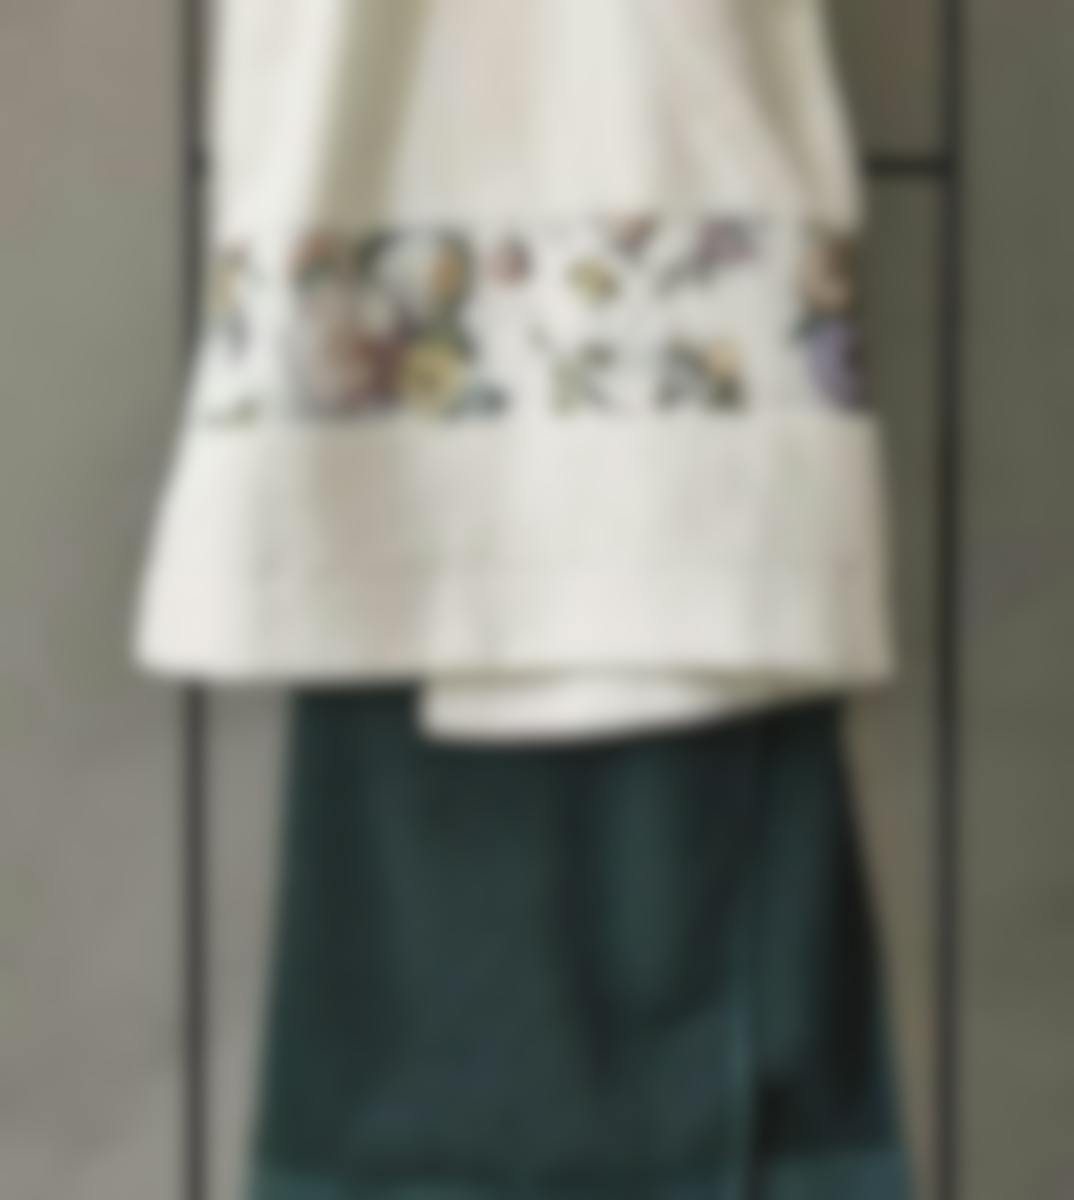 Essenza draps de bain Fleur Natural 70 x 140 cm